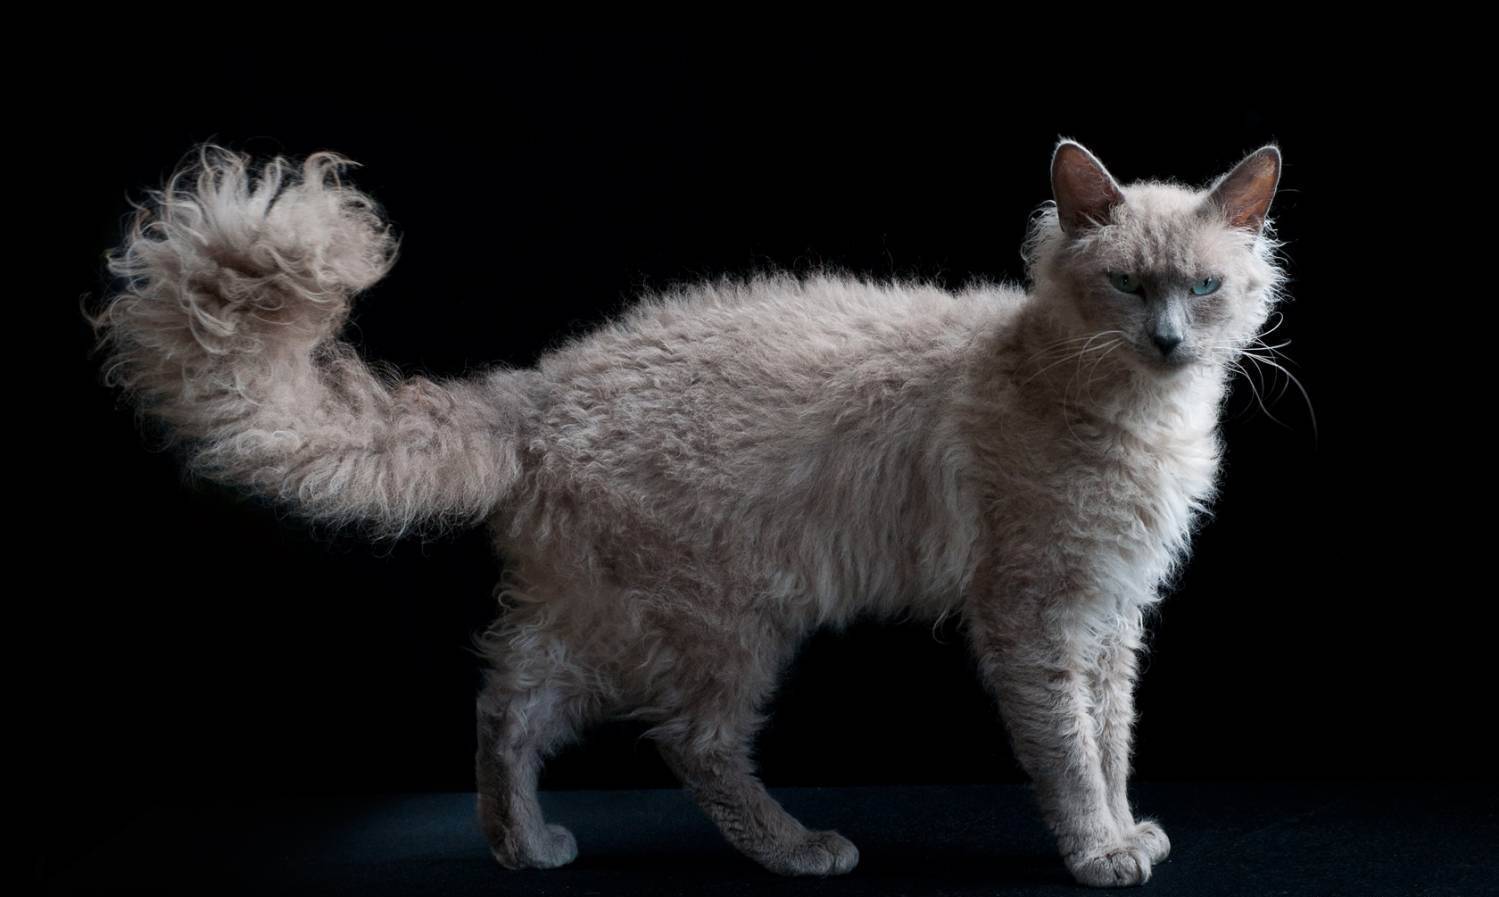 Лаперм: порода кошек с необычной шерстью